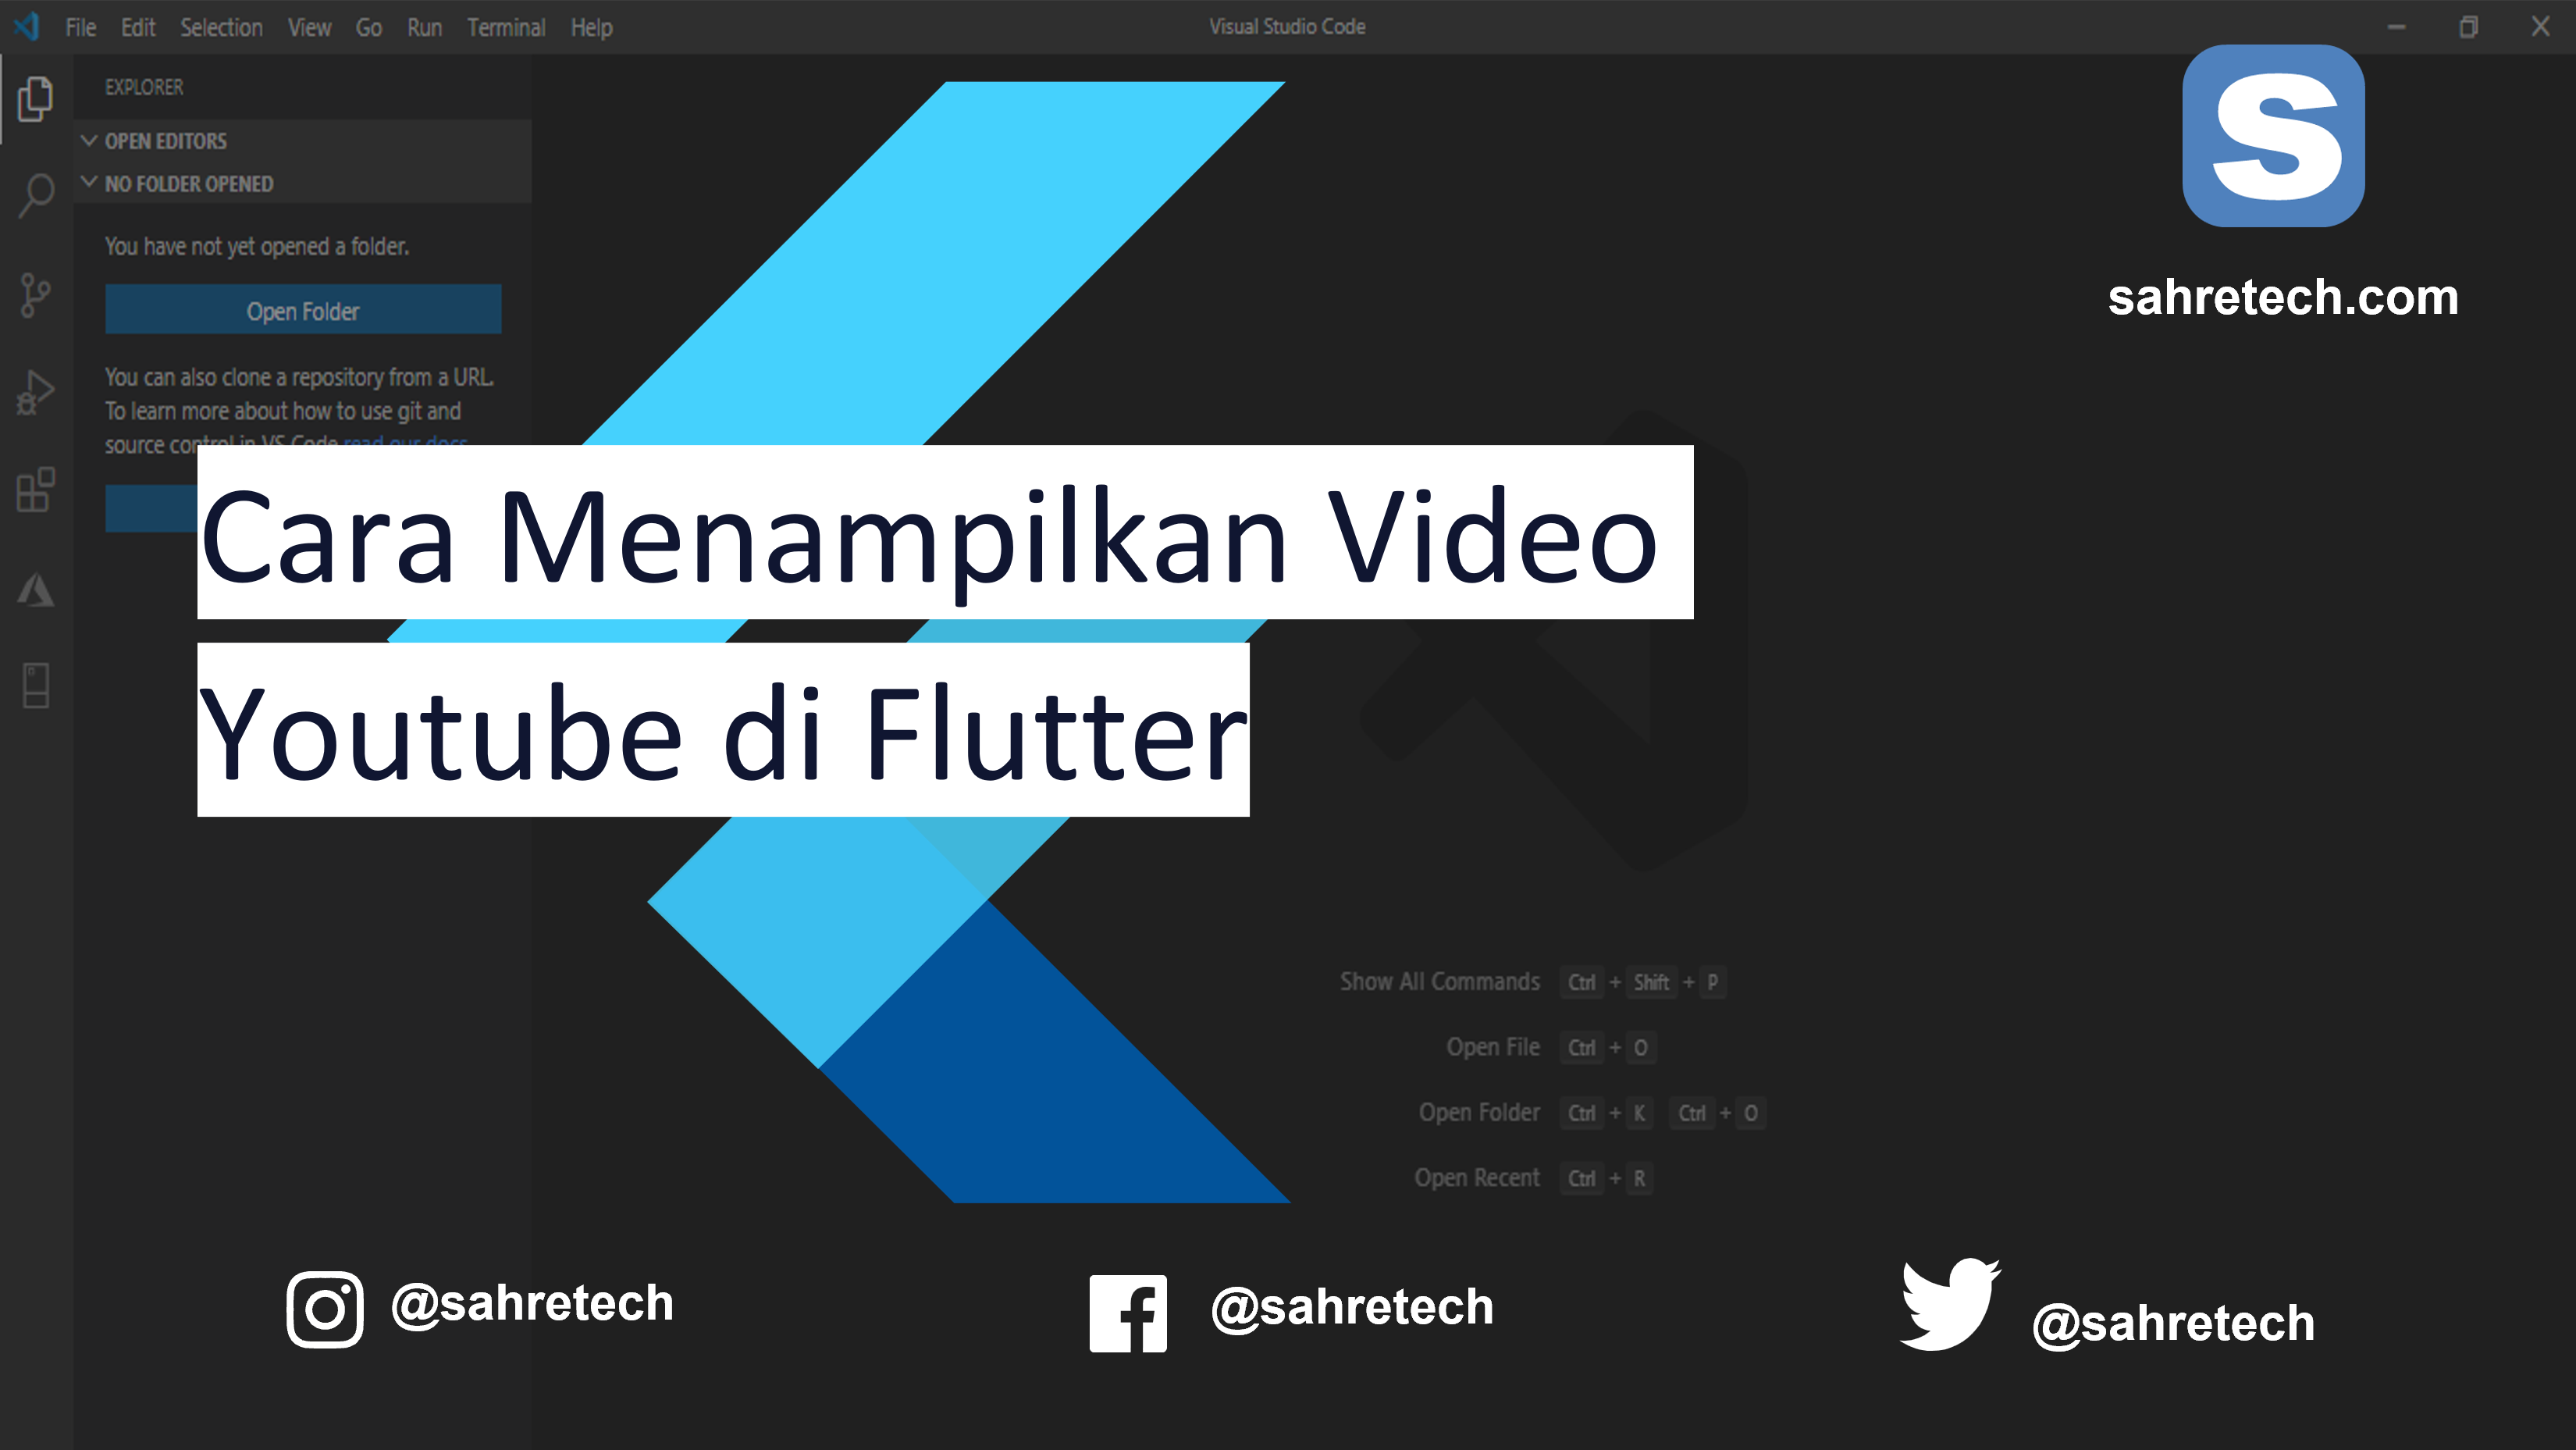 Cara Menampilkan Video Youtube di Flutter